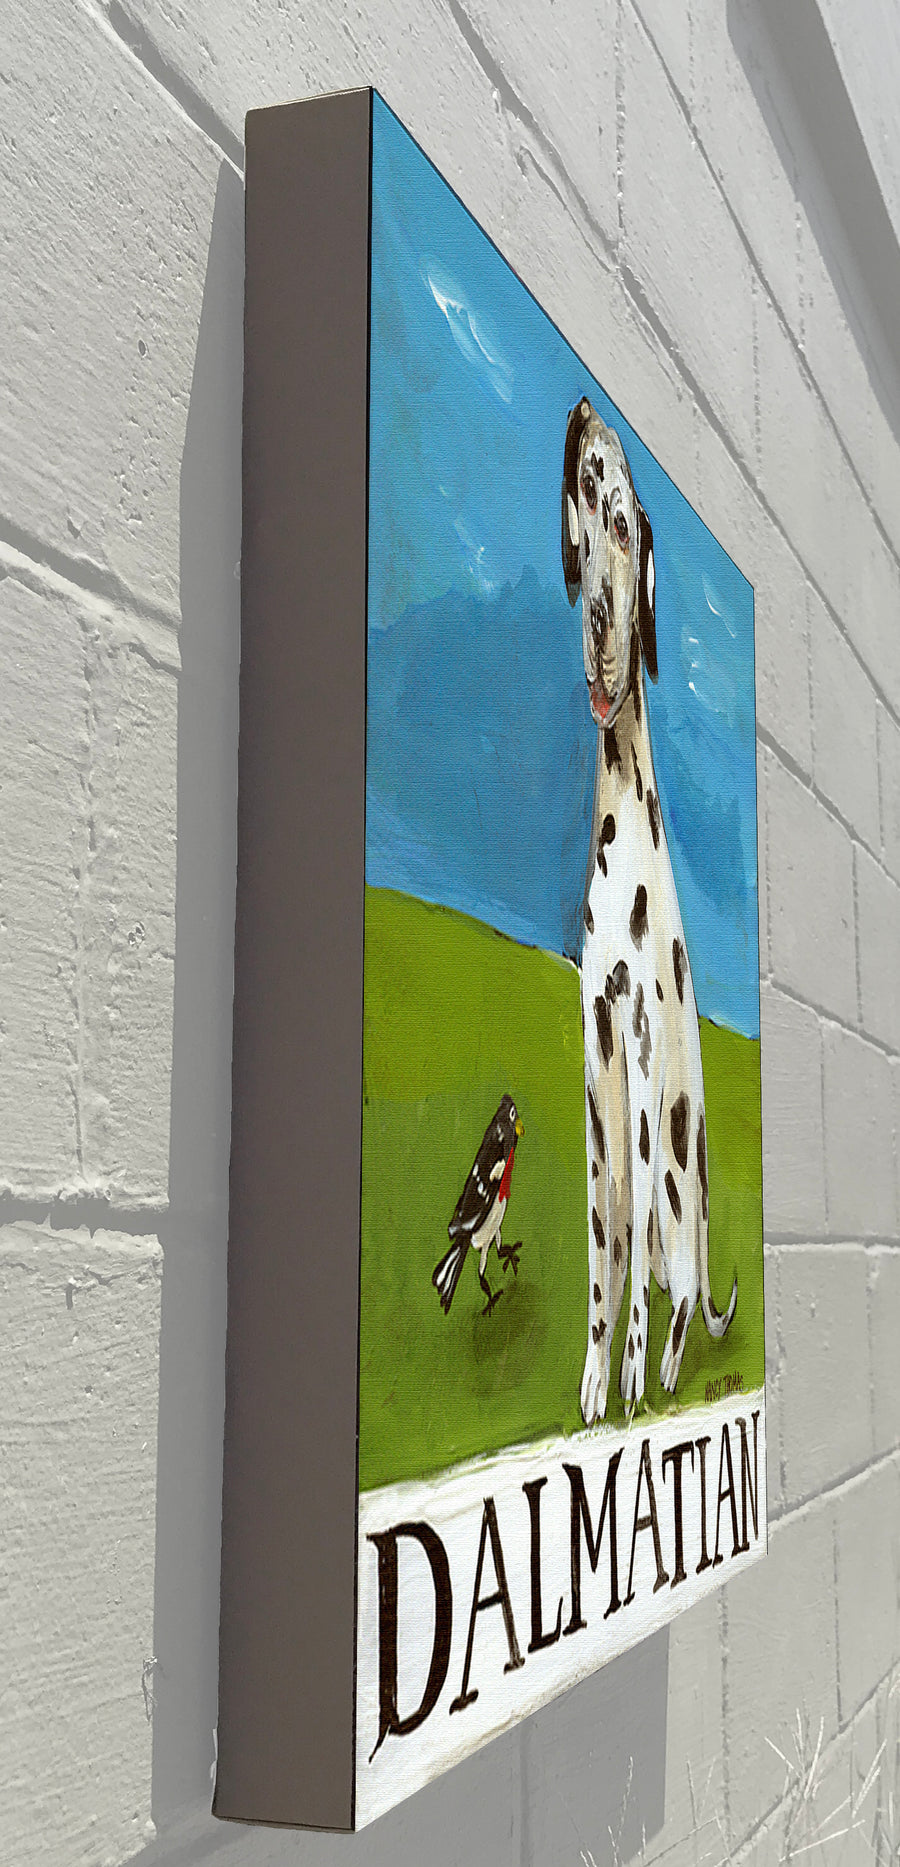 Gallery Grand - Doggie - Dalmatian